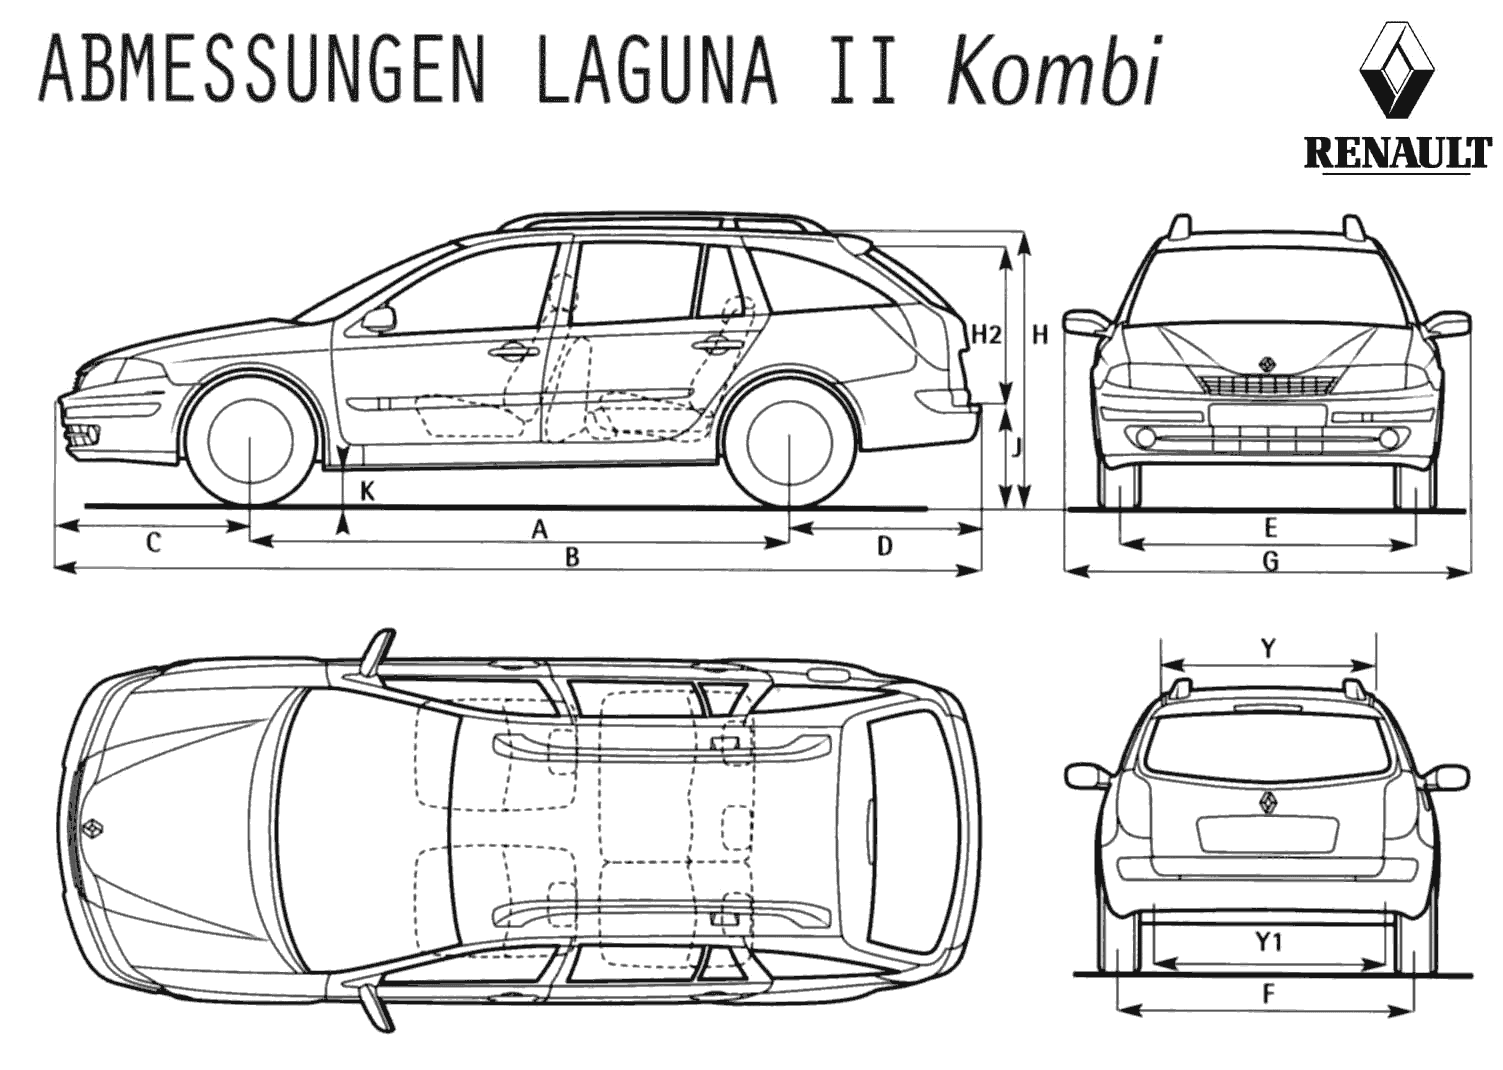 00 Renault Laguna Ii Kombi Wagon Blueprints Free Outlines